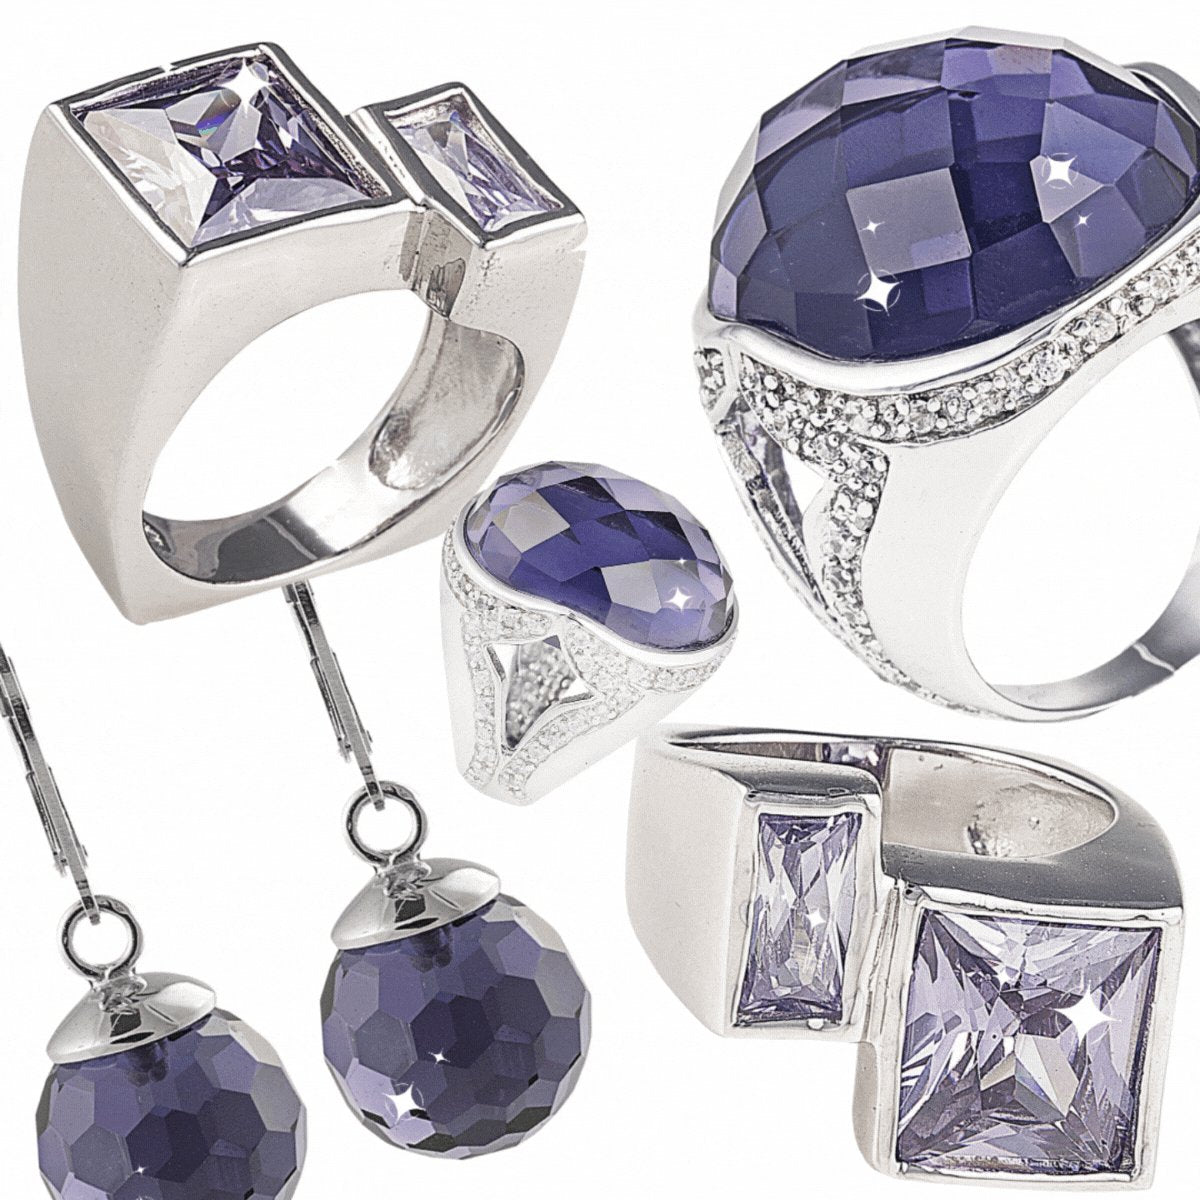 Purple Jewellery in 925 Sterling Silver. Worldwide Shipping from Australia 